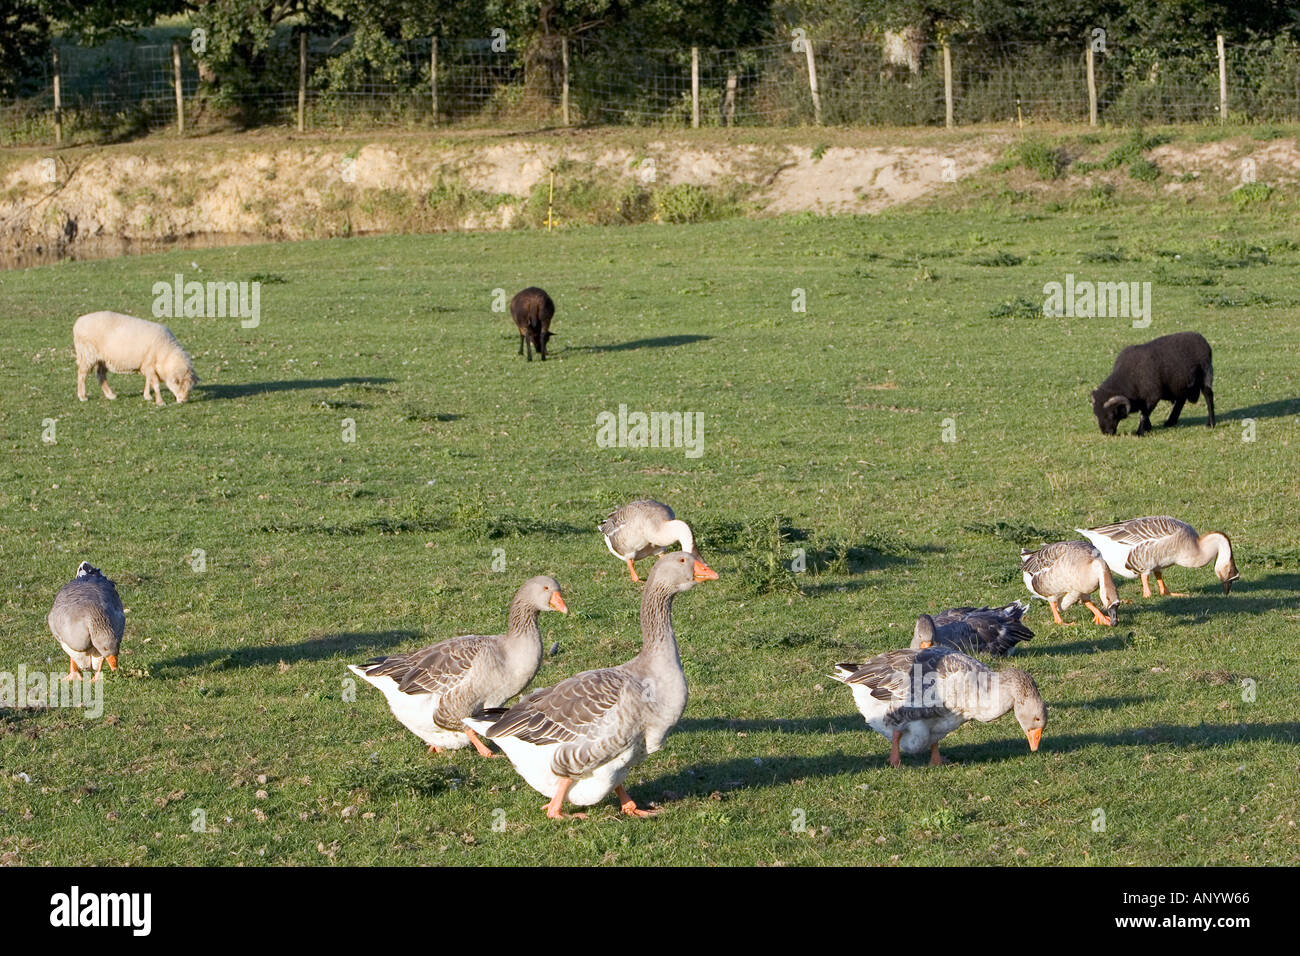 Gänse und Schafe Bauernhof Bretagne Frankreich freie Auswahl Vögel gefährdet sein könnte, wenn die Vogelgrippe Vogelgrippe-Virus-Grippe breitet sich Stockfoto